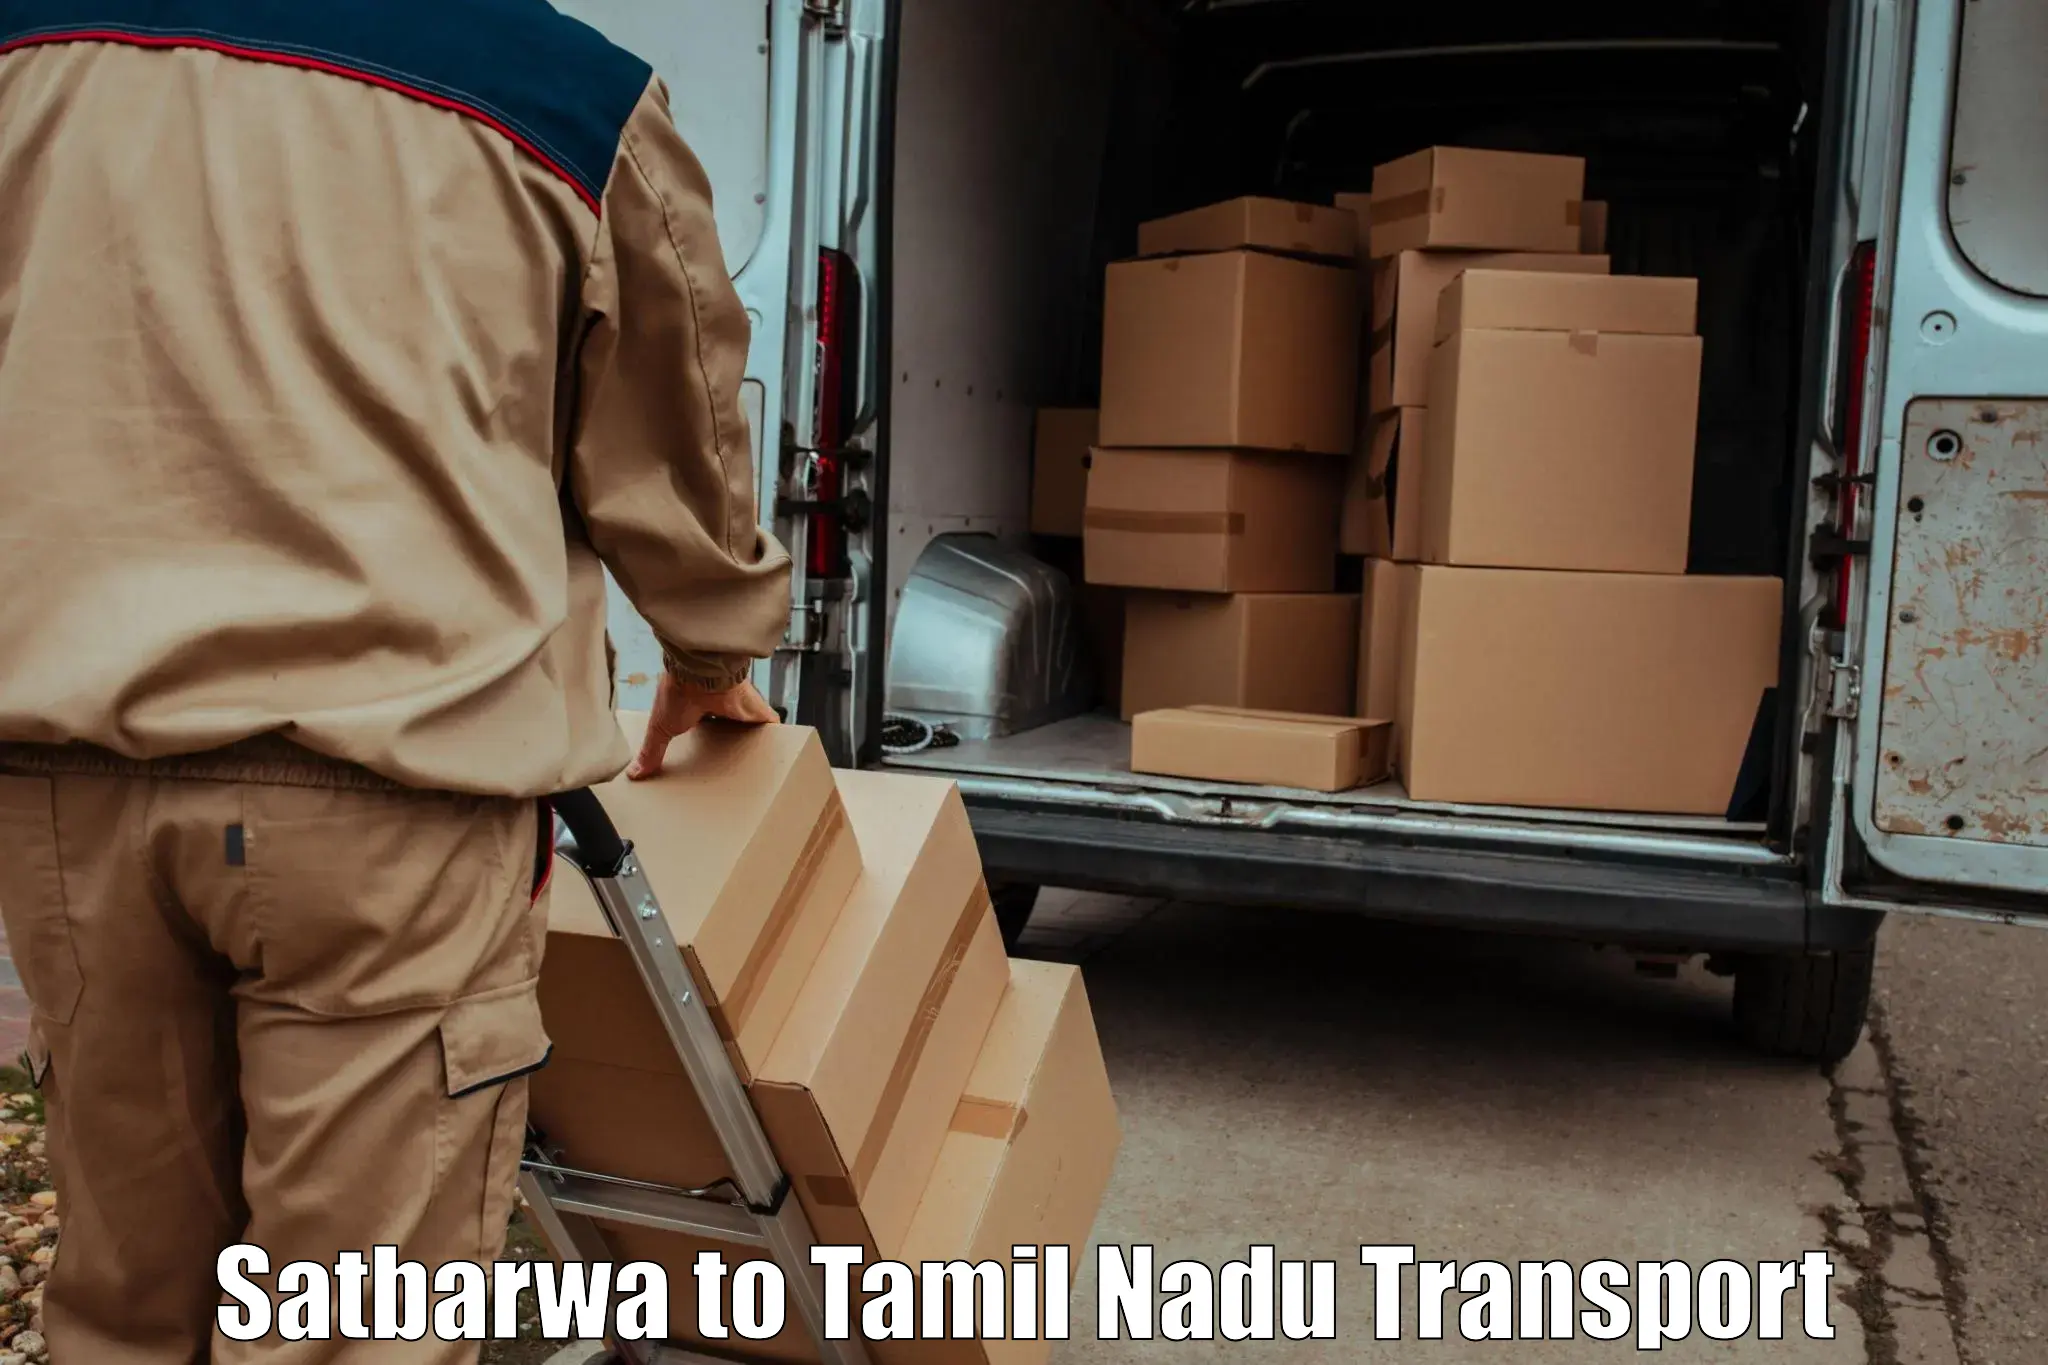 Furniture transport service Satbarwa to Perundurai